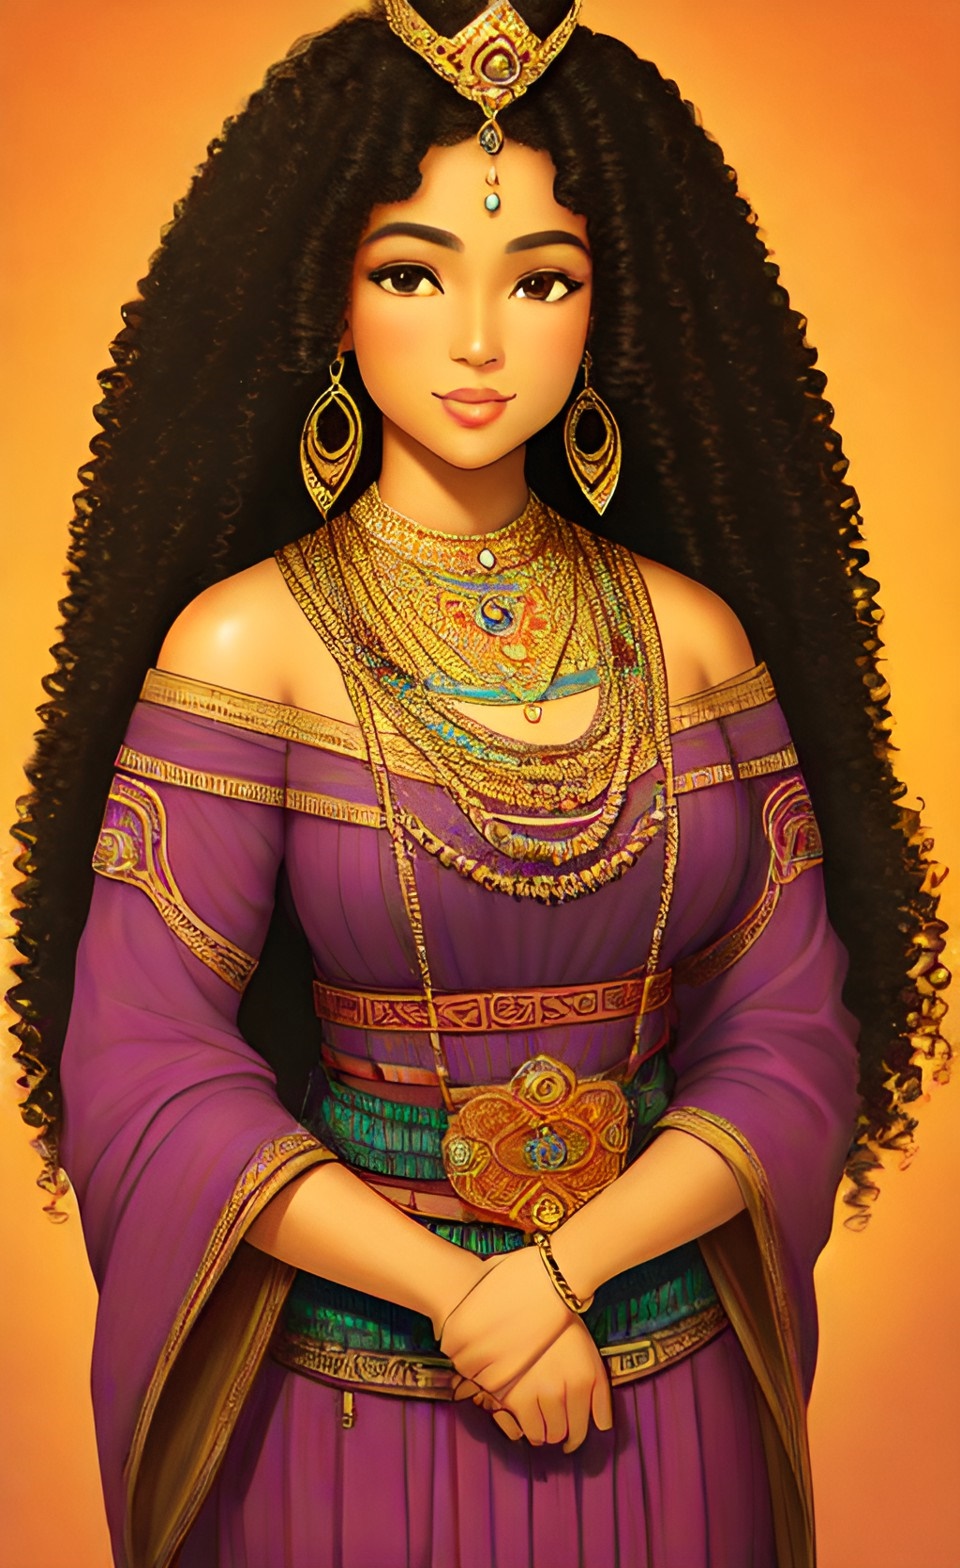 Mixed-race Queen of SHEBA art work Mixed420